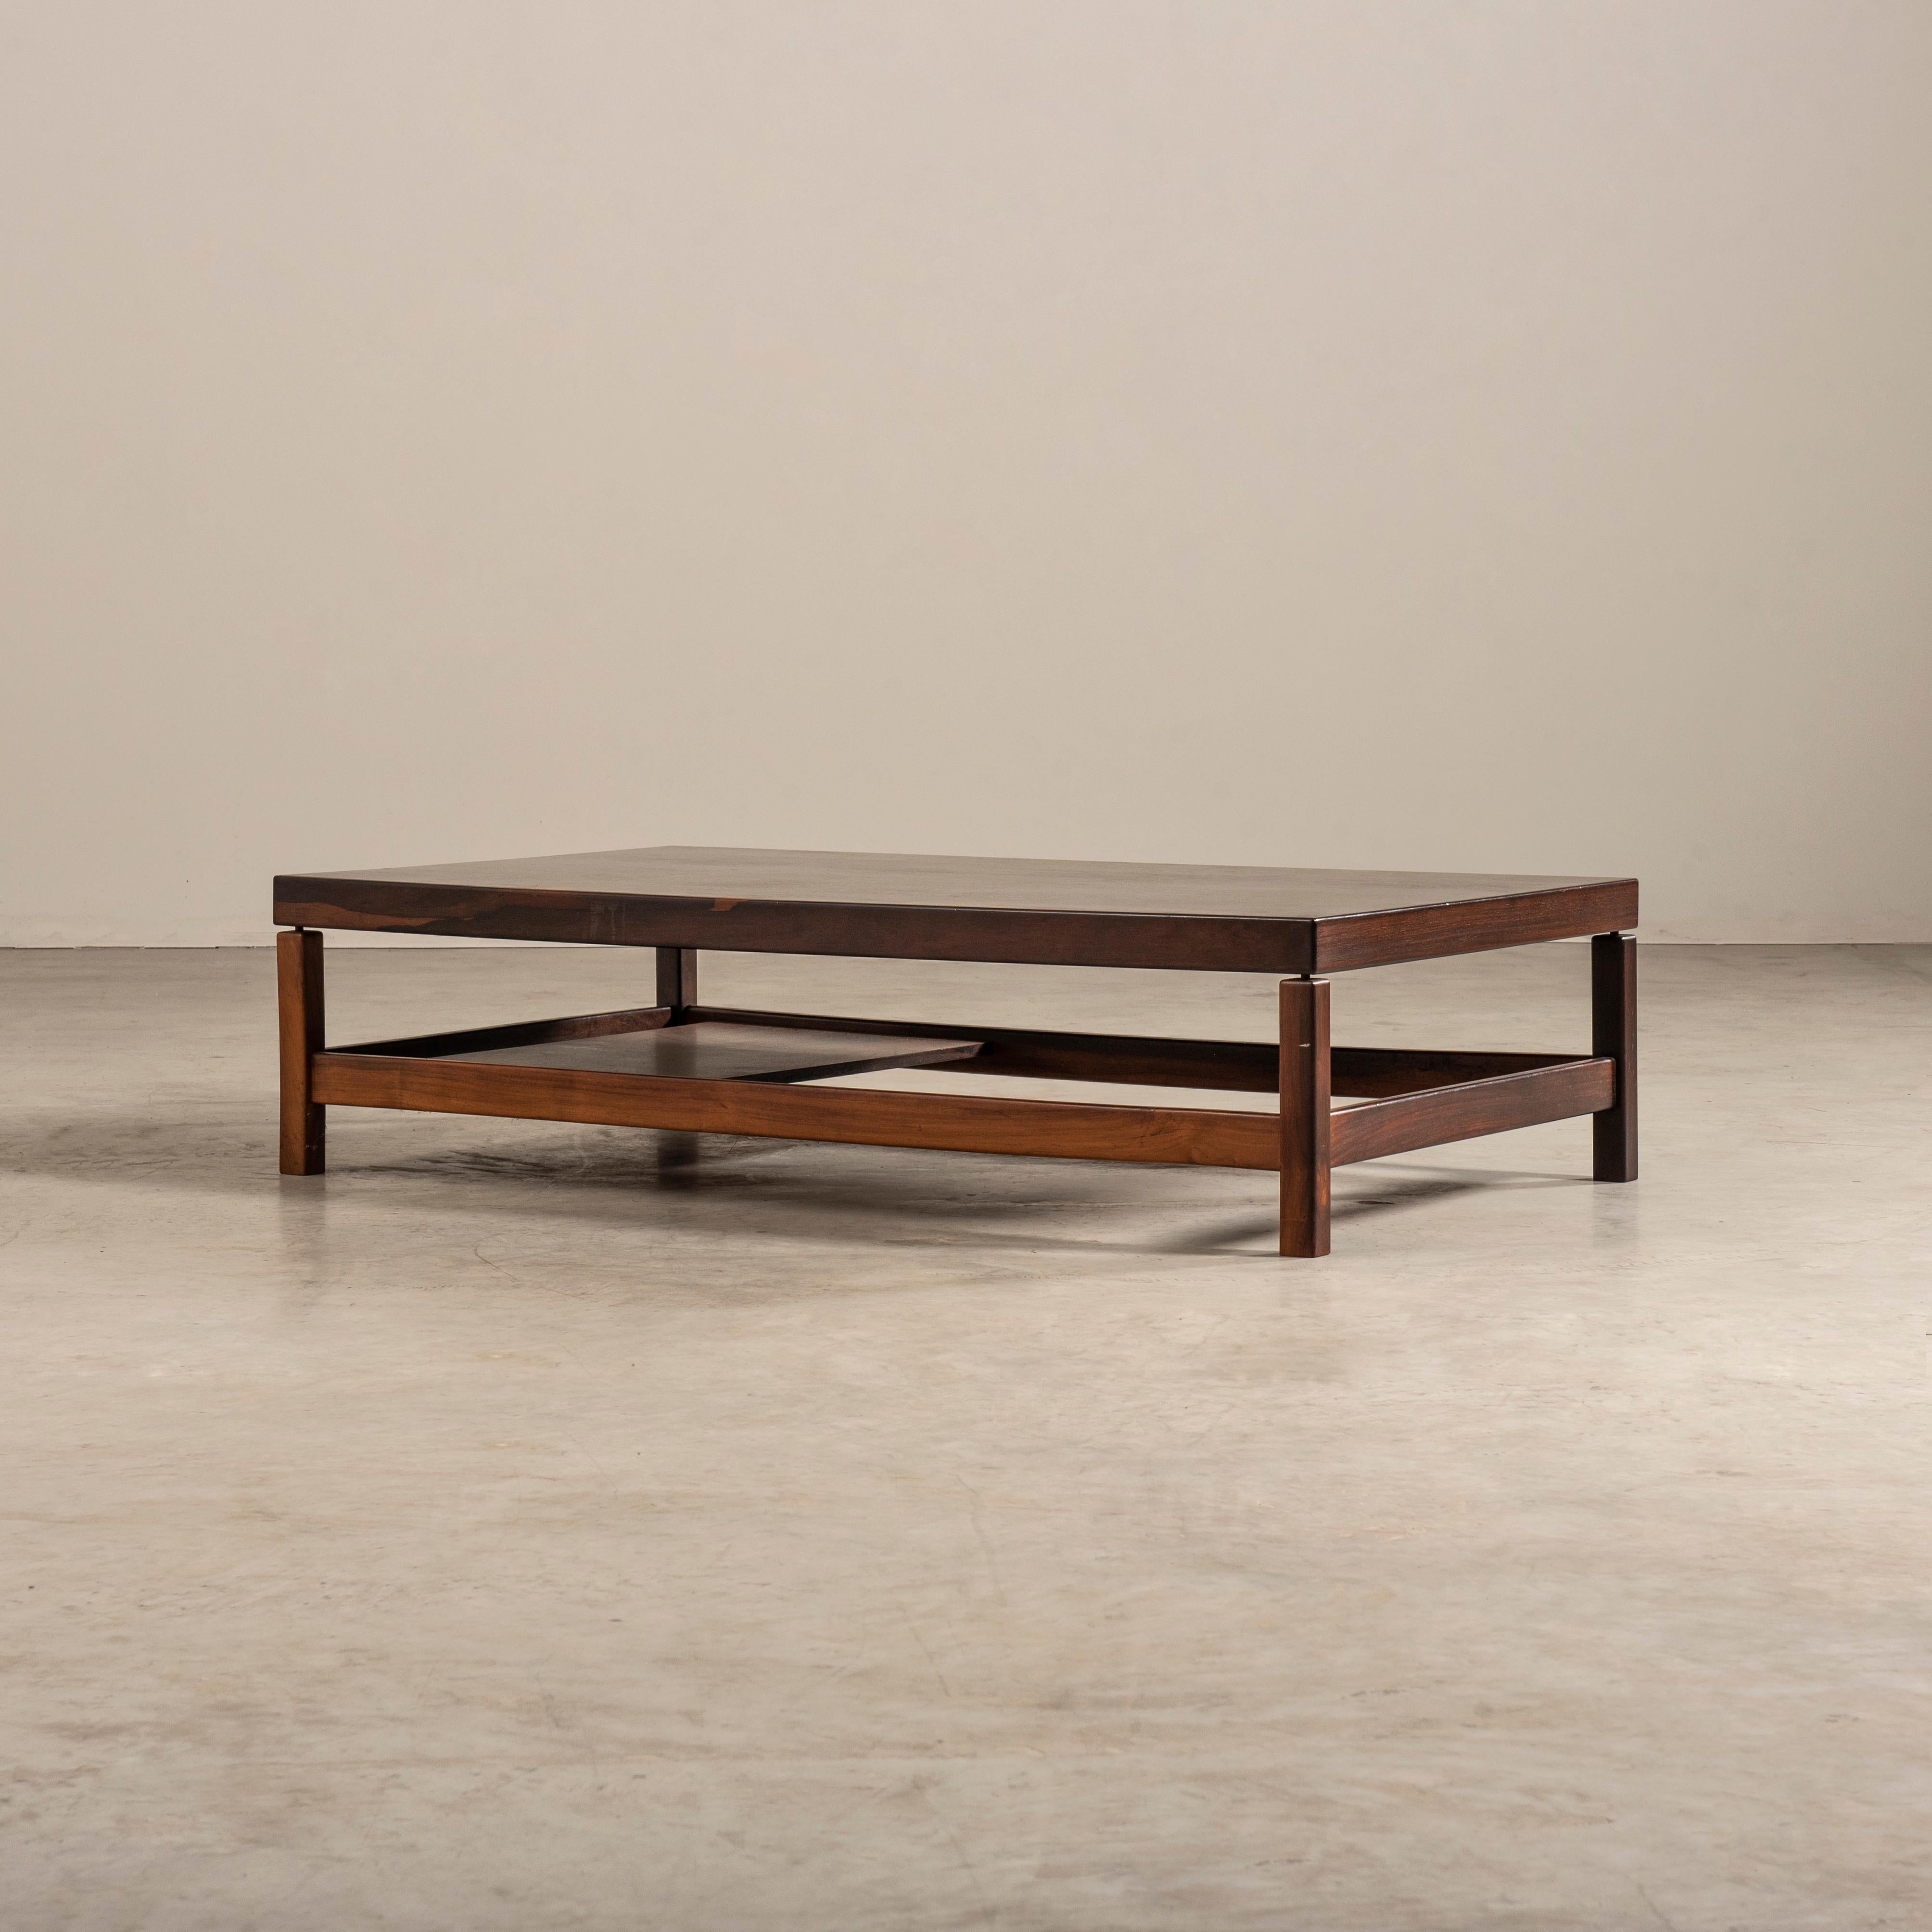 Cette table basse présente un design intemporel rappelant le célèbre designer brésilien Sergio Rodrigues. Fabriquée au Brésil dans les années 1960, cette pièce exsude l'esprit de cette époque, capturant l'essence de l'esthétique moderne du milieu du